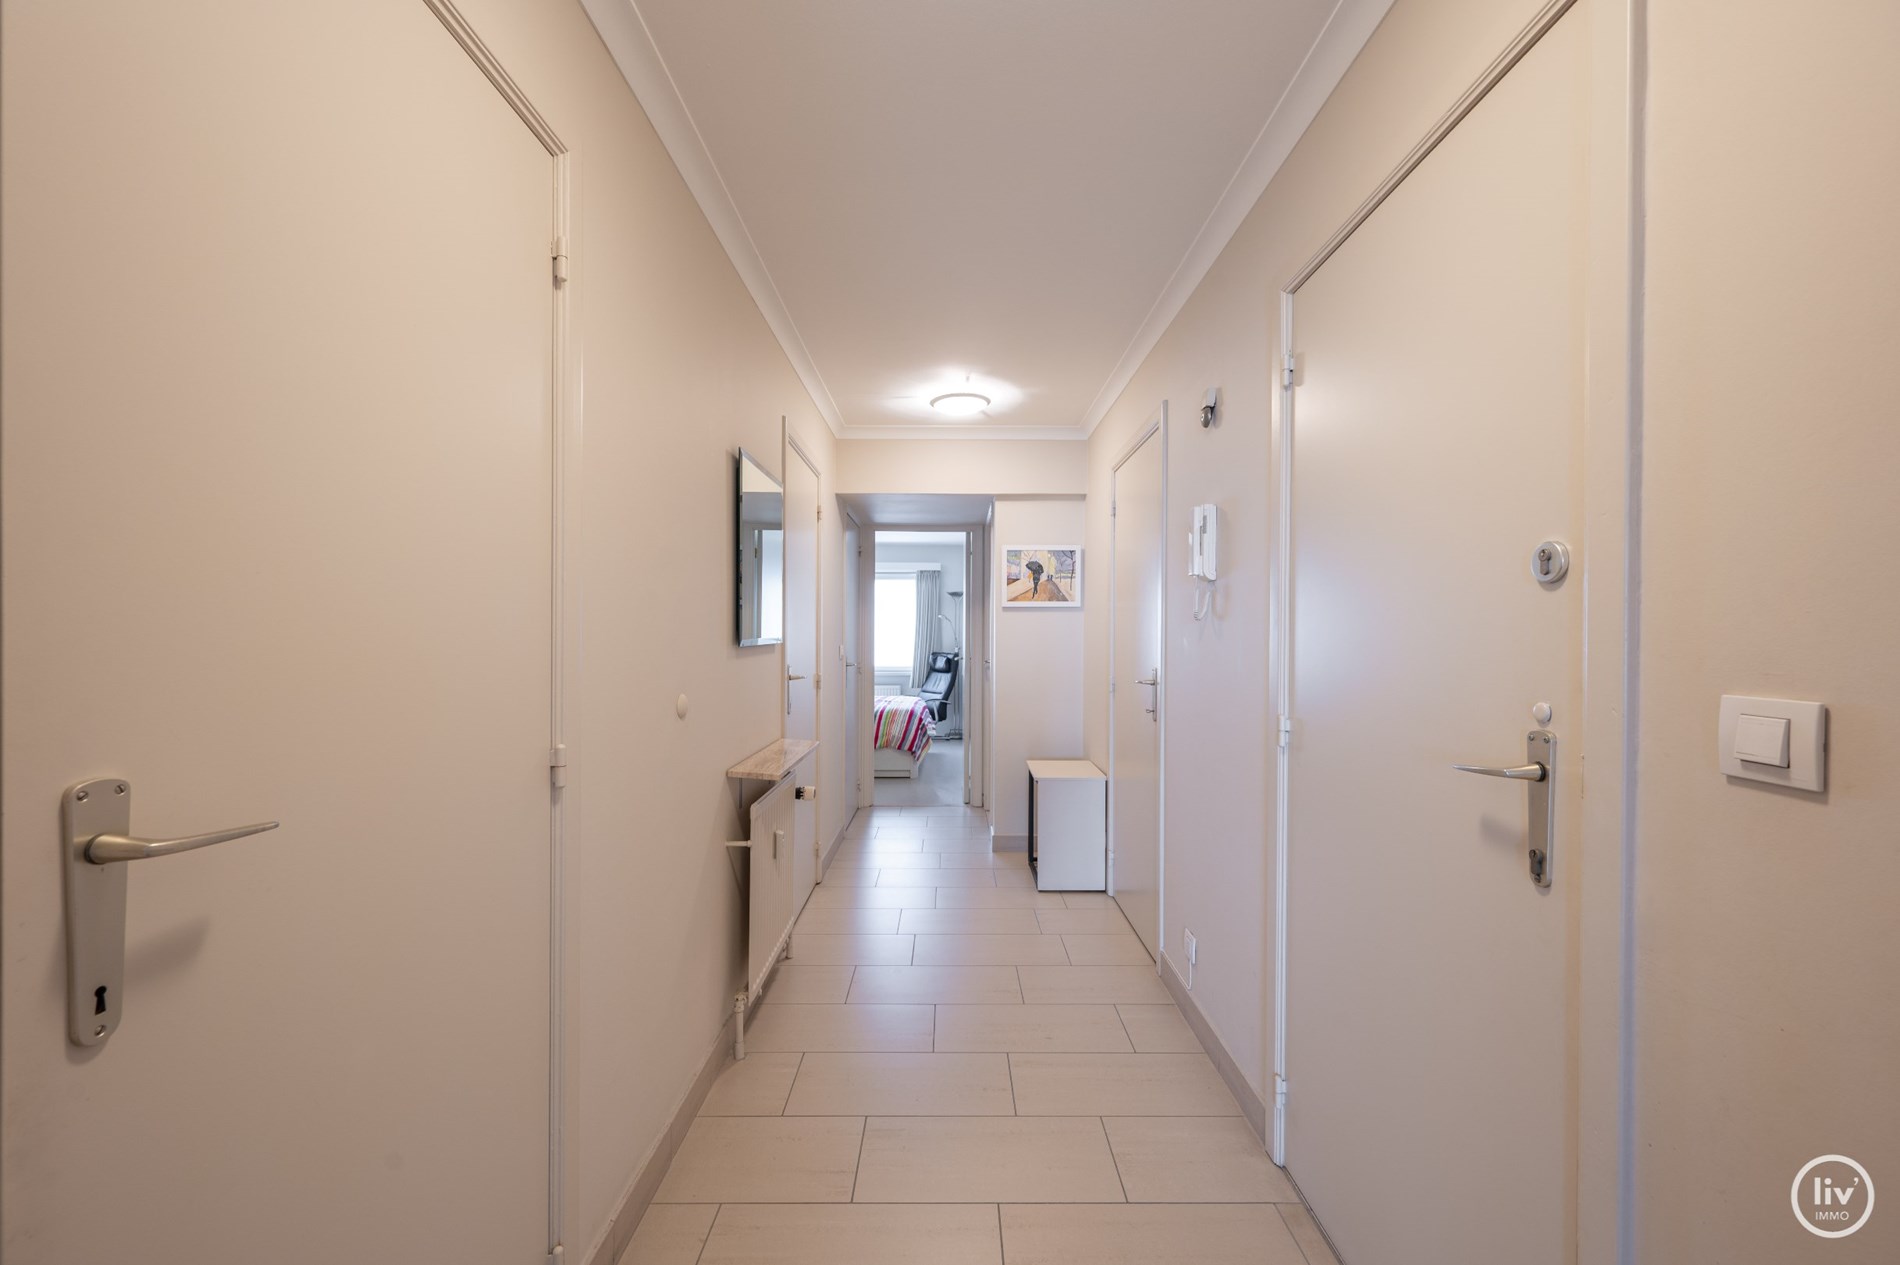 Agr&#233;able appartement de 2 chambres avec vue frontale sur la MER situ&#233; sur la place Vanbunnen &#224; Knokke. 